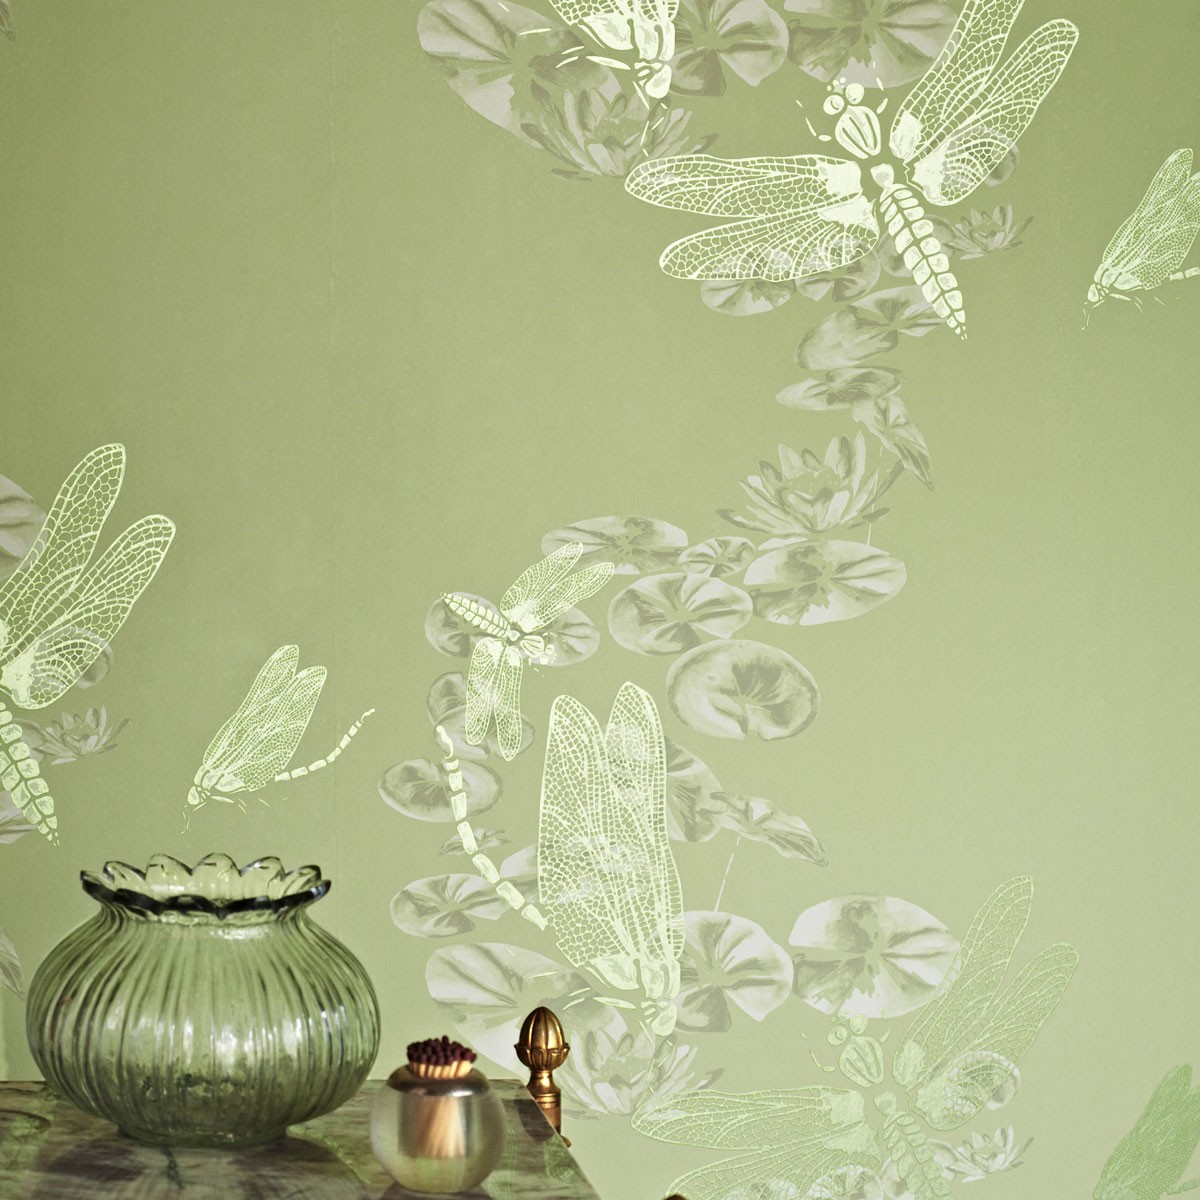 dragonfly wallpaper uk,green,wallpaper,illustration,room,plant